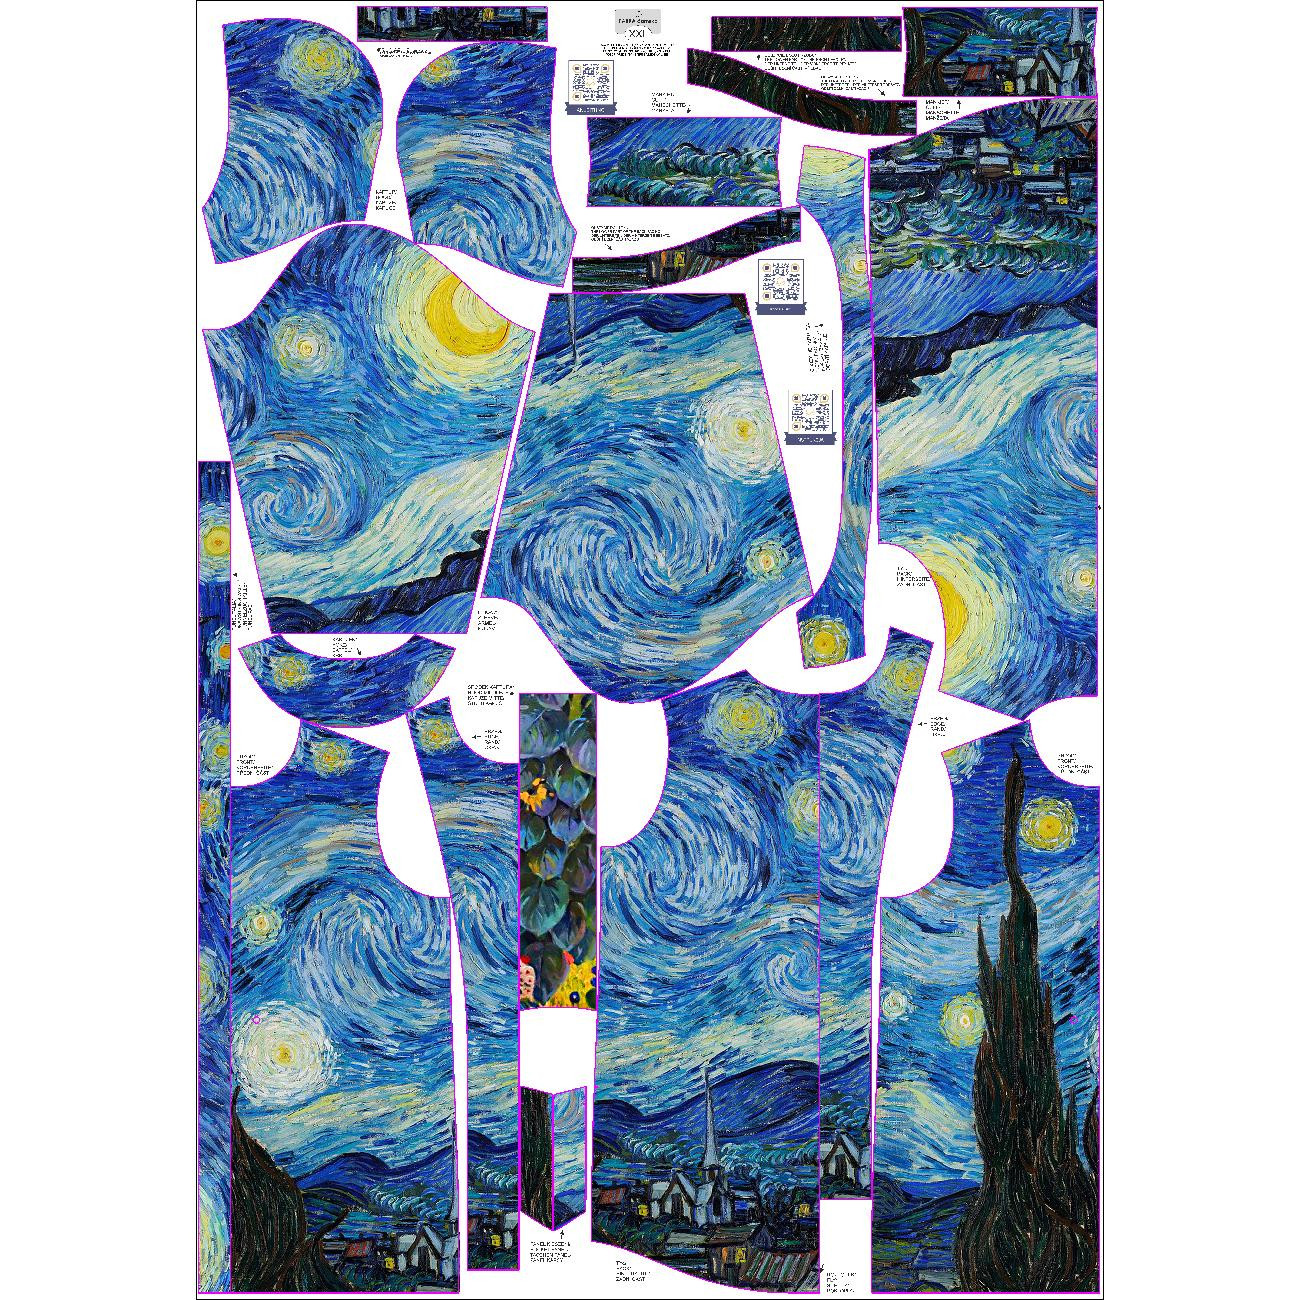 PARKA DAMSKA (ANNA) - GWIAŹDZISTA NOC (Vincent van Gogh) - zestaw do uszycia